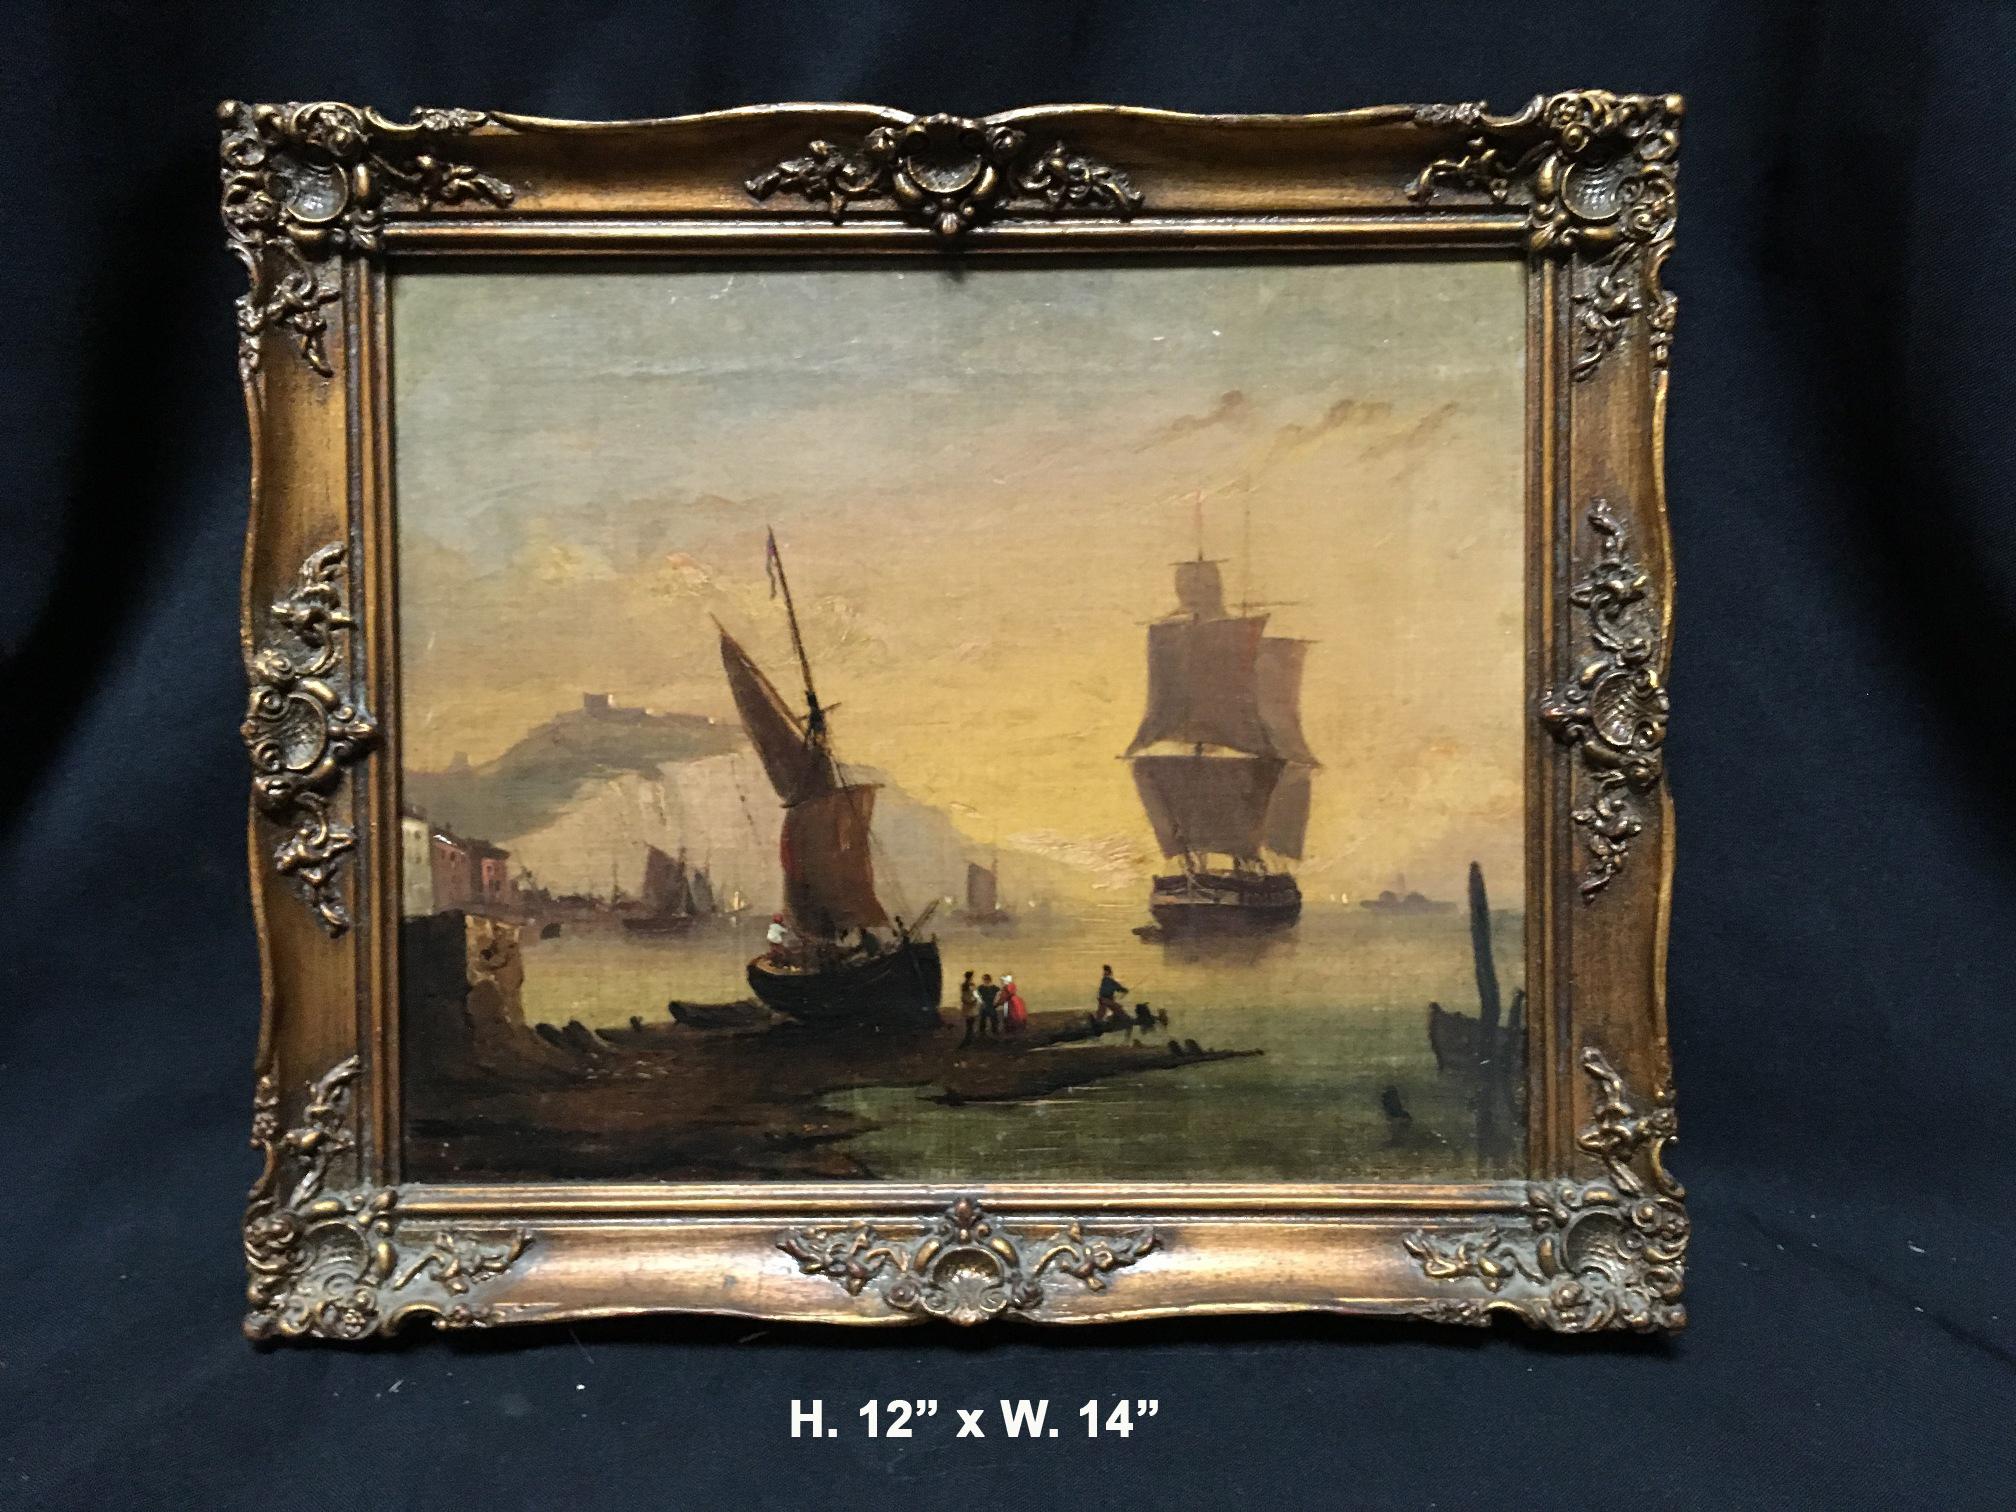 Huile maritime sur toile représentant une scène portuaire. 
Dans un cadre en bois plus récent. 
Fin du 19e siècle-début du 20e siècle
Au dos de la toile, on peut lire : 